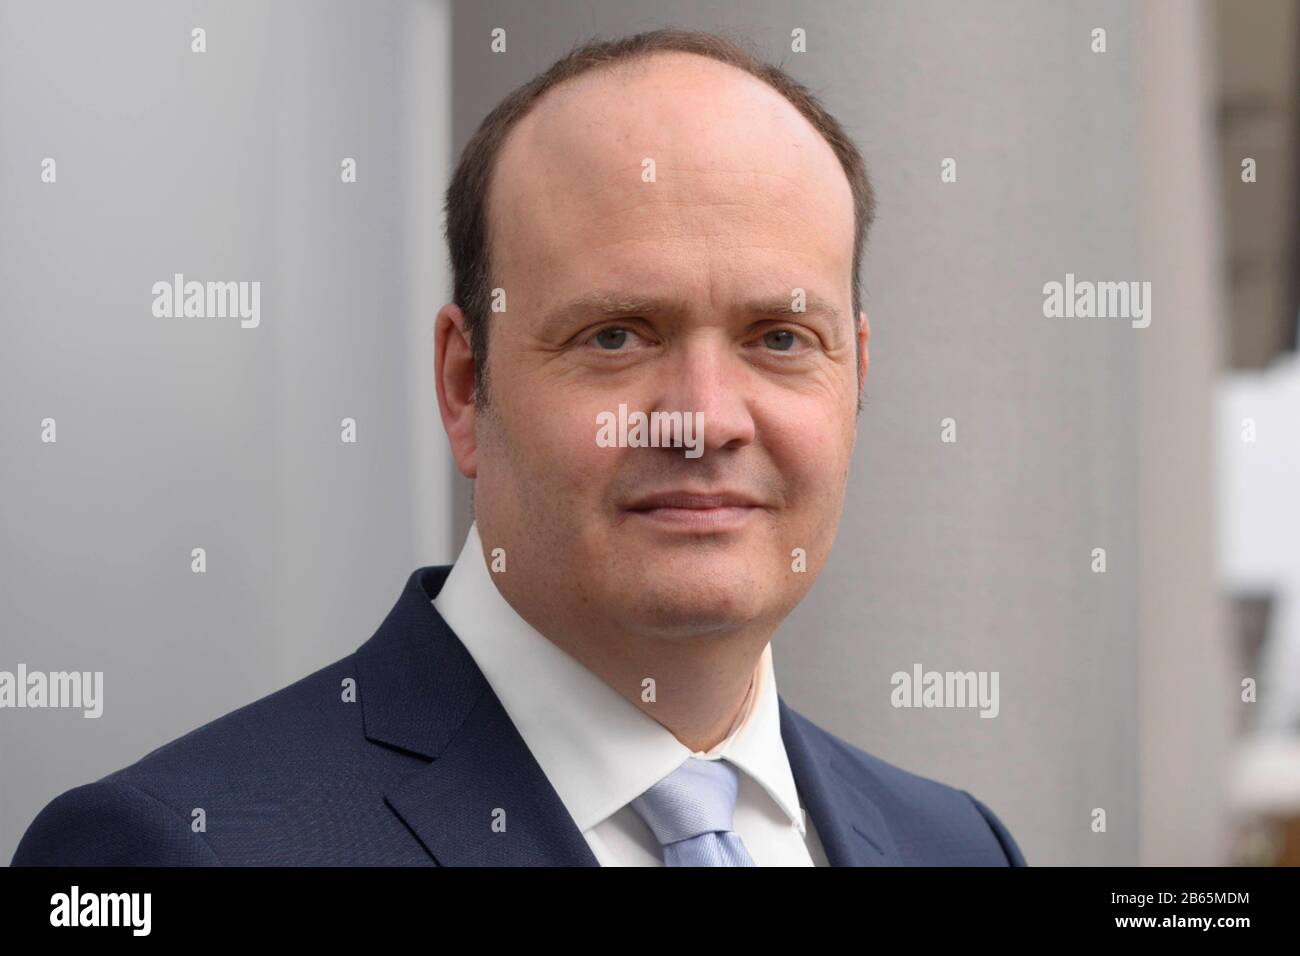 Leipzig, DEU, 23.03.2017: Portrait Robin Alexander, geboren 1975, Politikkorrespondent, Reporter und Autor (Deutschland) Stockfoto